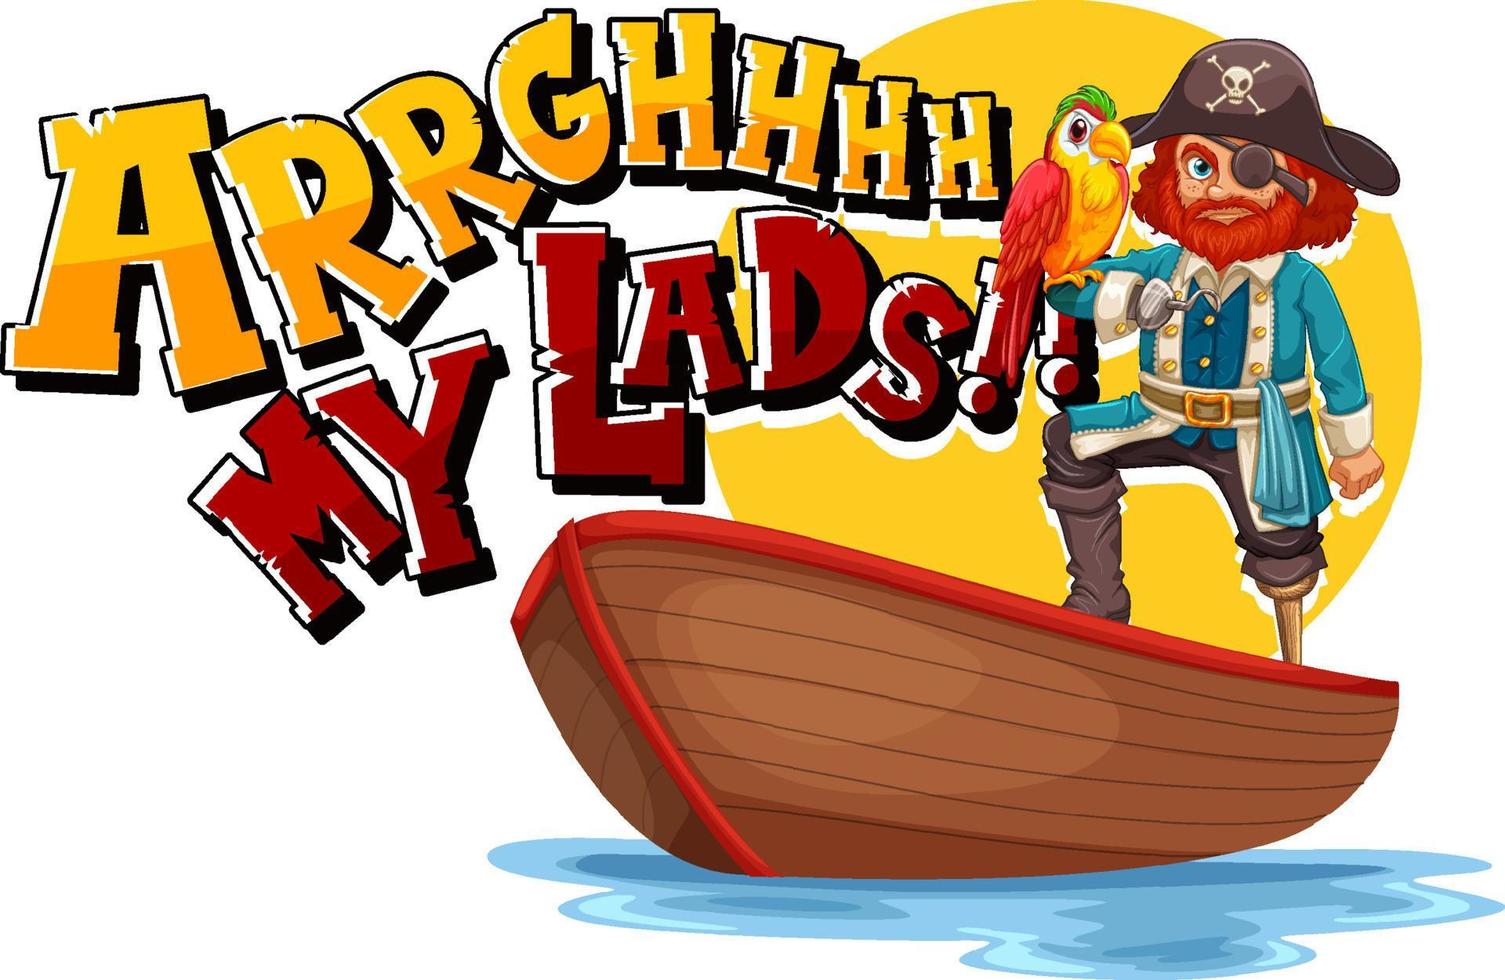 conceito de gíria de pirata com a frase arrgh my lads e um personagem de desenho animado de pirata vetor